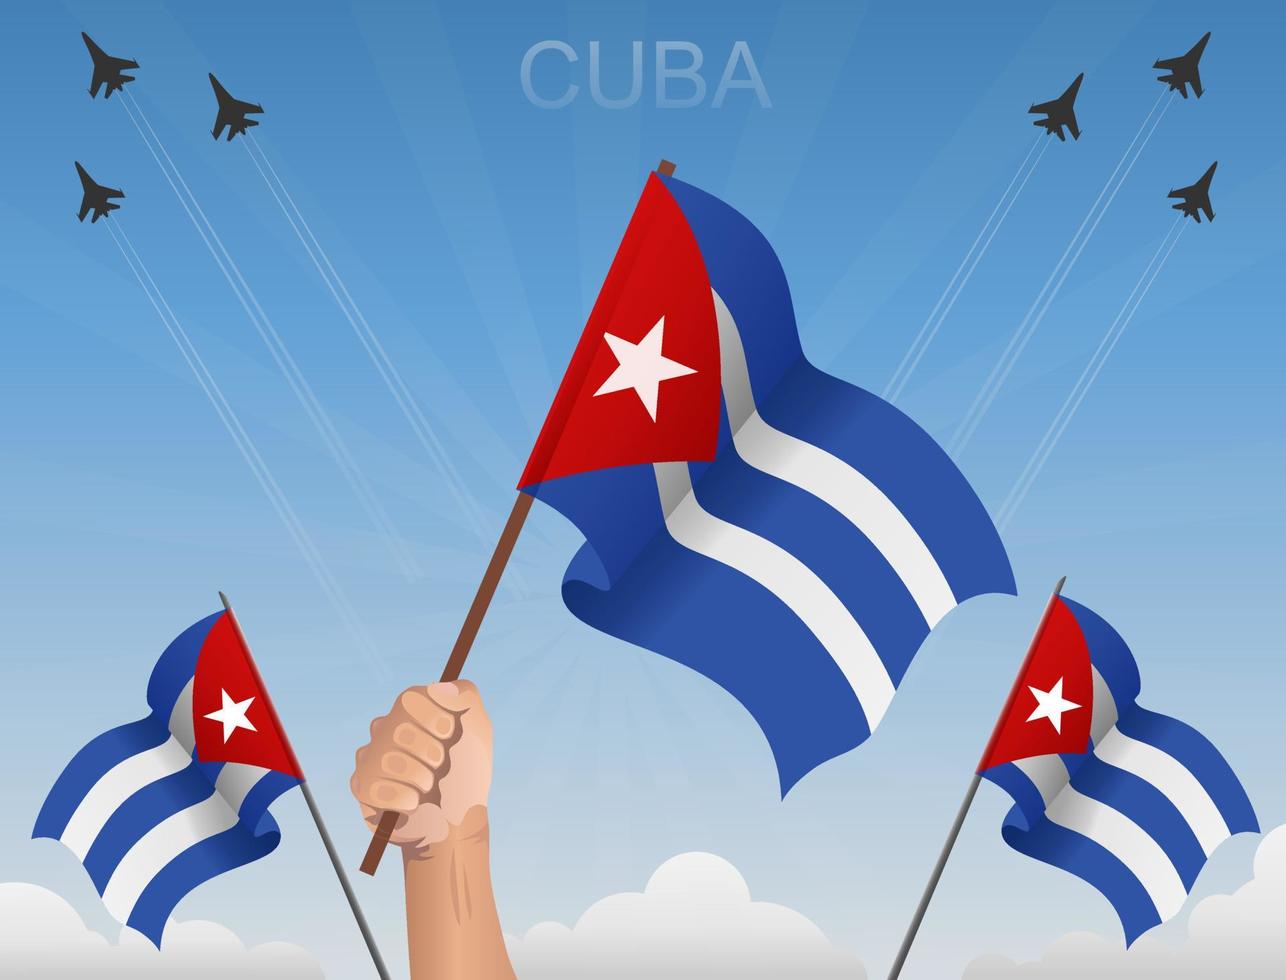 Cuba drapeaux flottant sous le ciel bleu vecteur